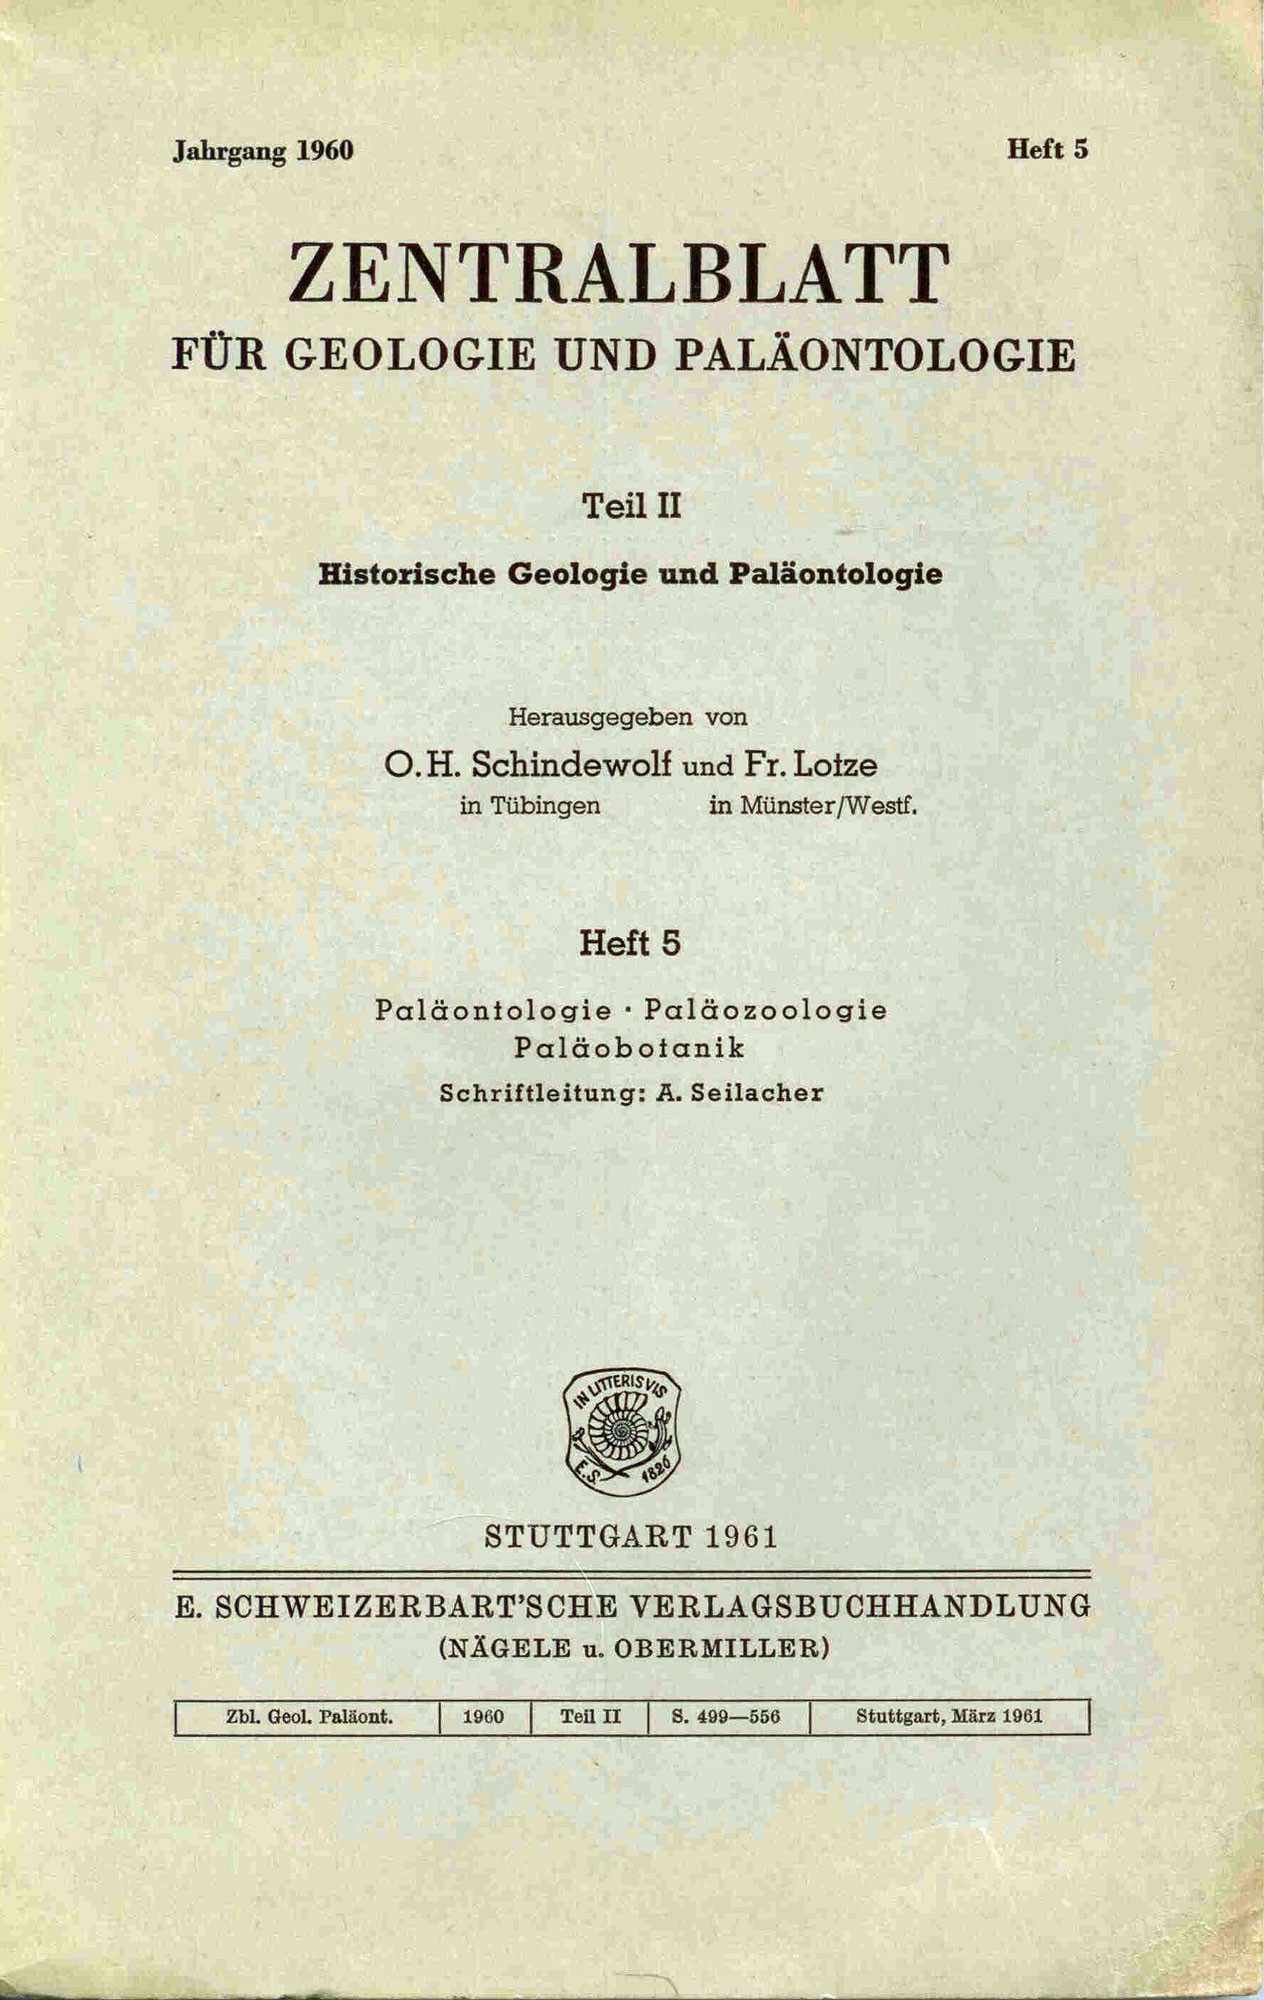 Schindewolf O. H., Lotze Fr.: Zentralblatt für Geologie und Paläontologie 